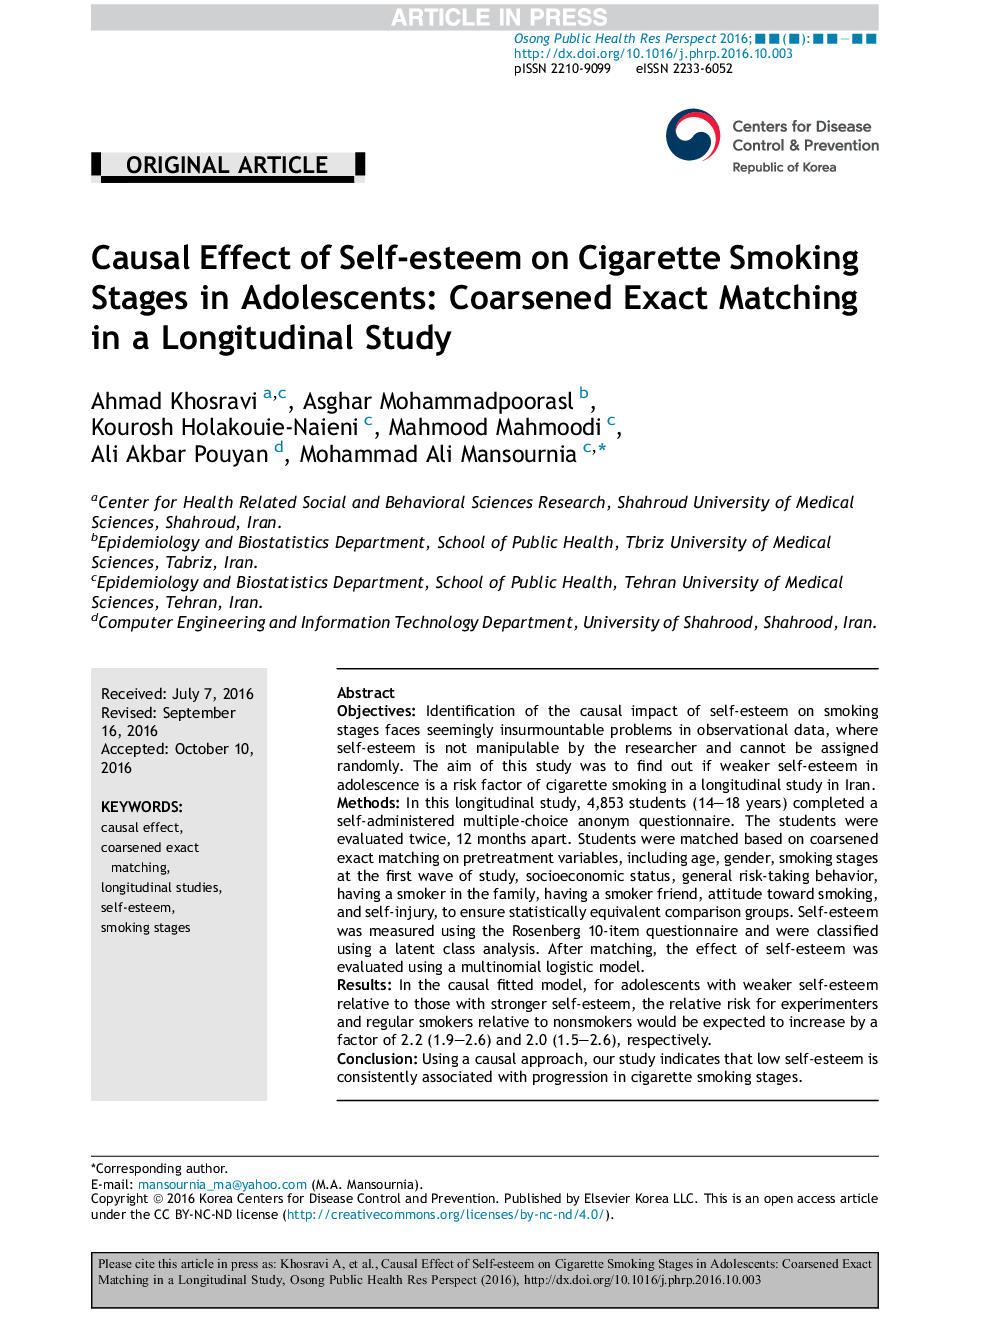 تأثیر سؤال بر عزت نفس در مرحله مصرف سیگار در نوجوانان: تطبیق کامل دقیق در یک مطالعه طولی 